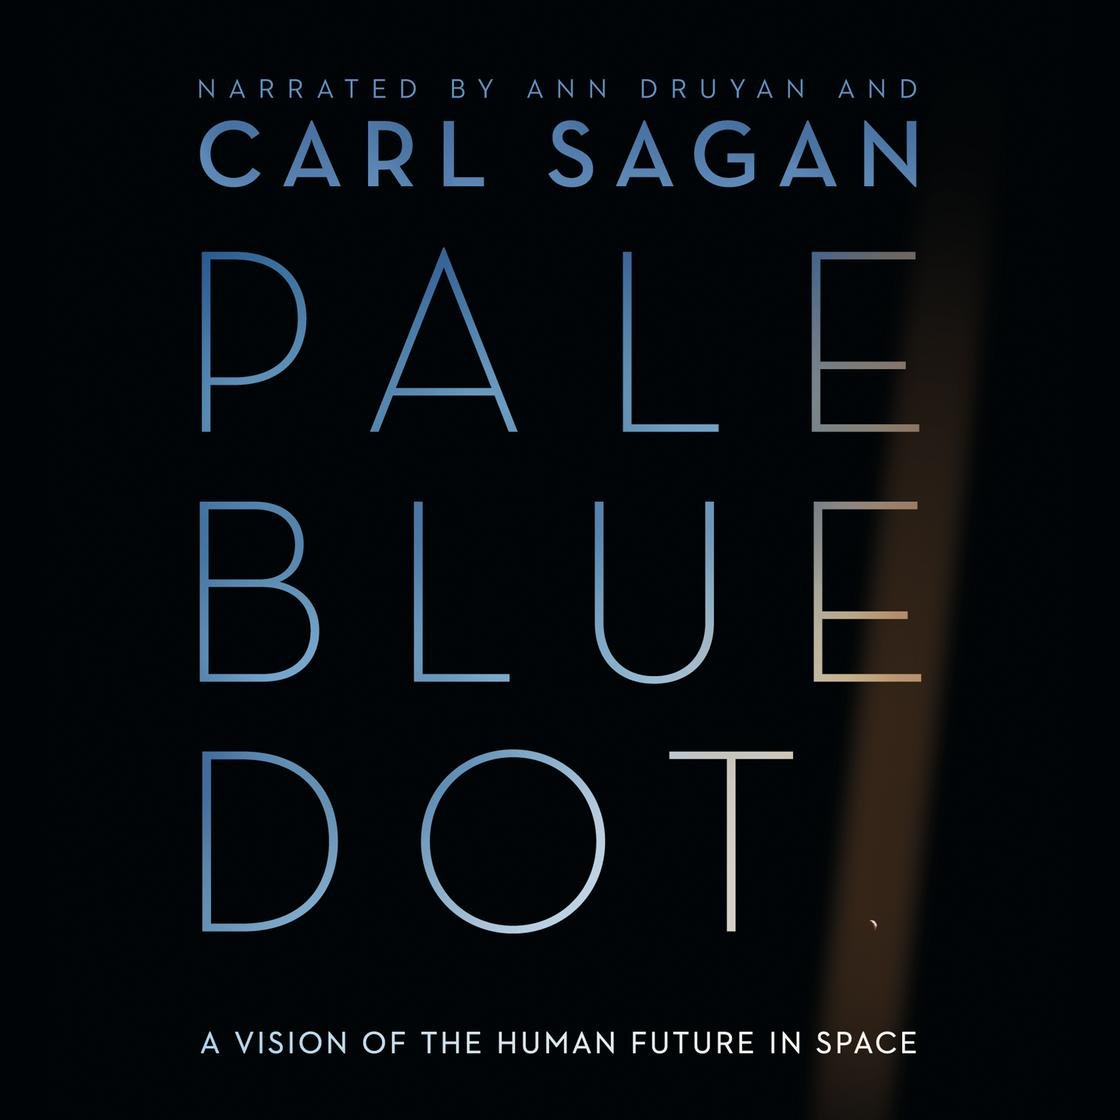 Carl Sagan's "Pale Blue Dot"